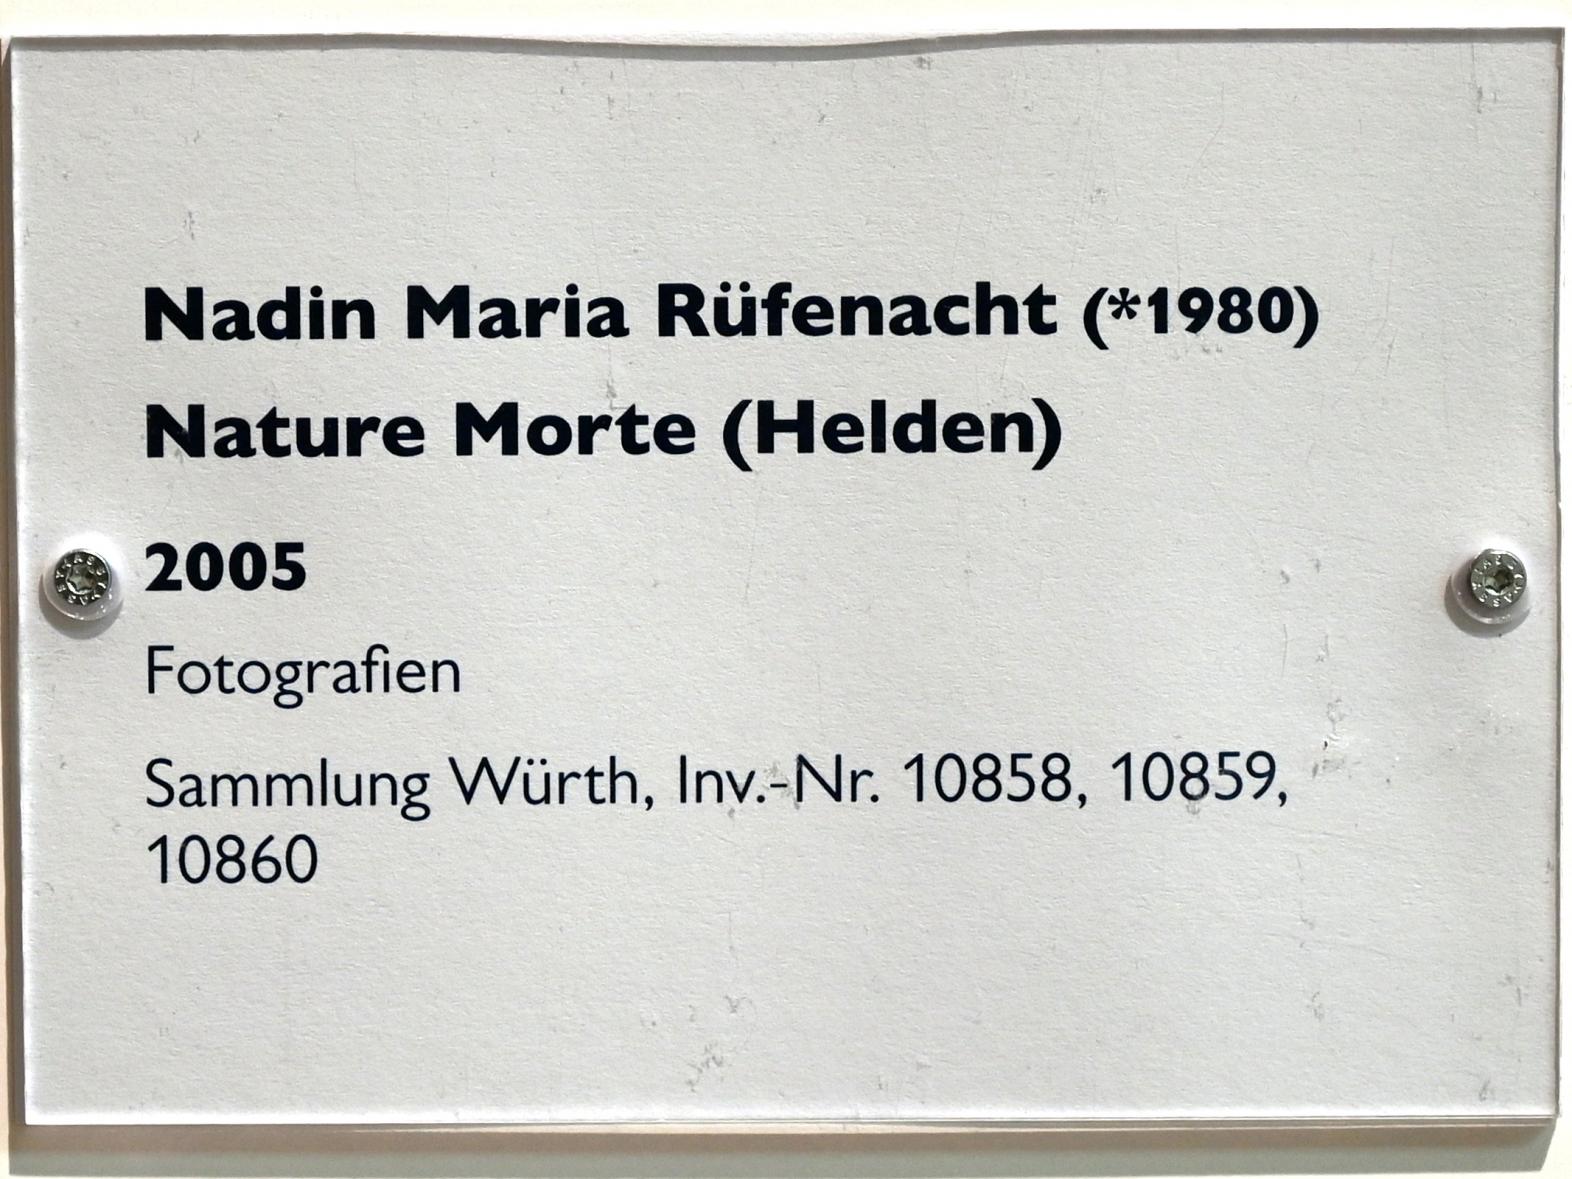 Nadin Maria Rüfenacht (2005), Nature Morte (Helden), Schwäbisch Hall, Kunsthalle Würth, Untergeschoß Saal 10, 2005, Bild 2/2